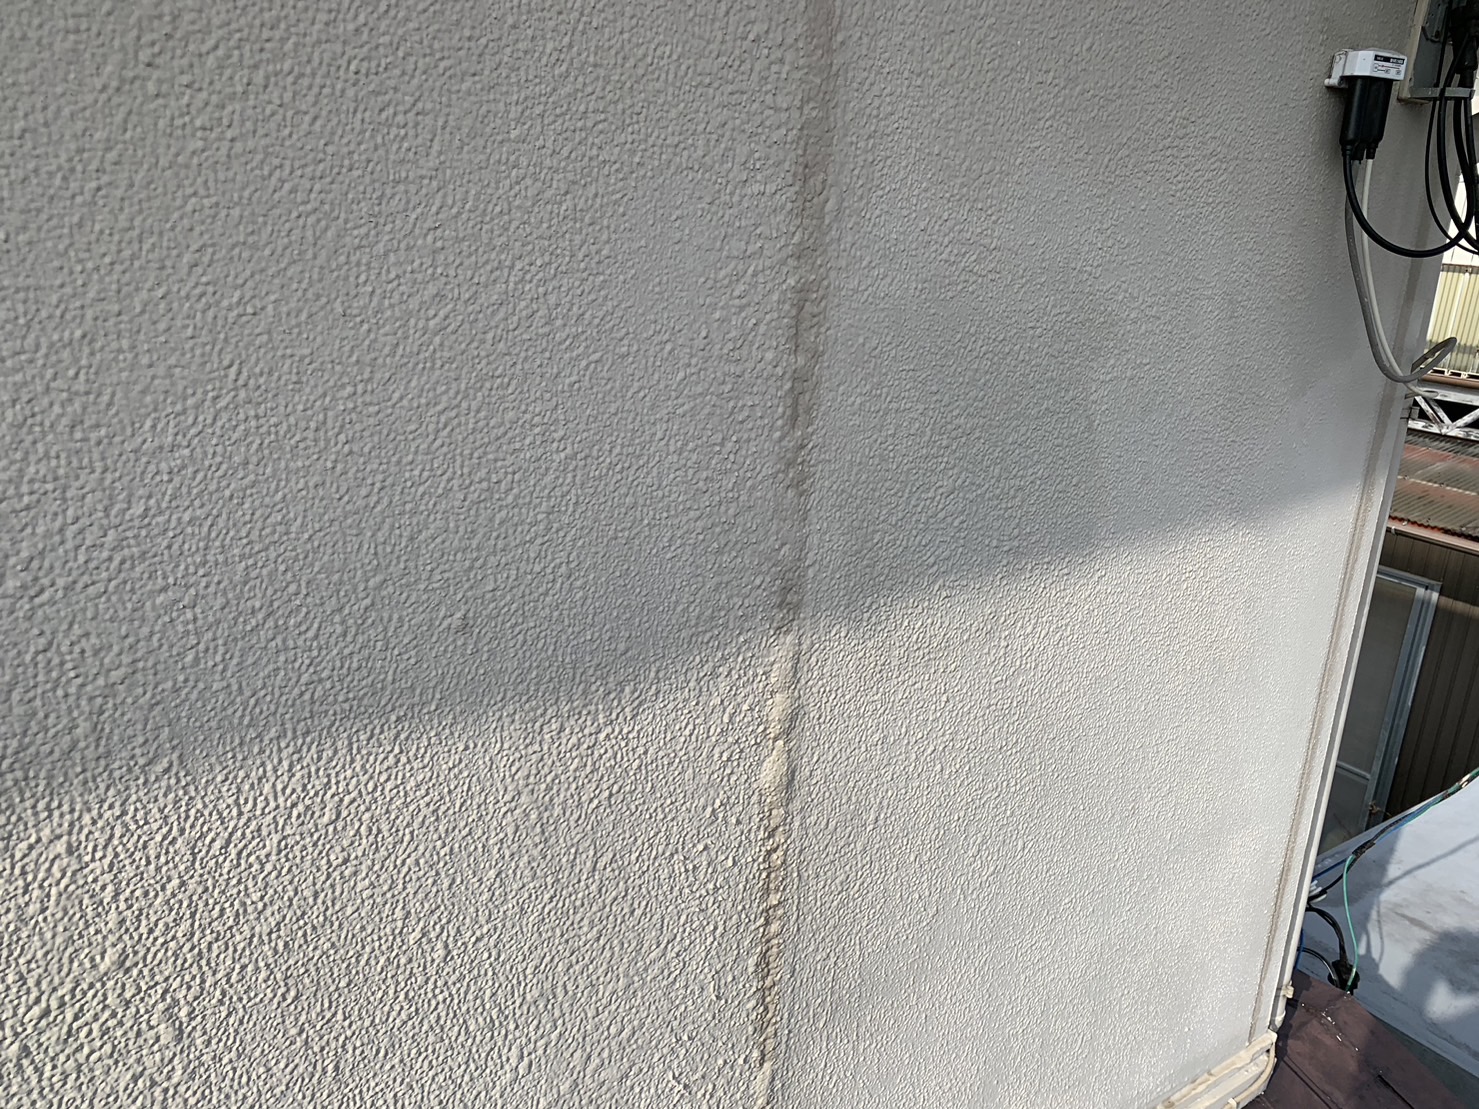 東員町の外壁の塗膜浮き